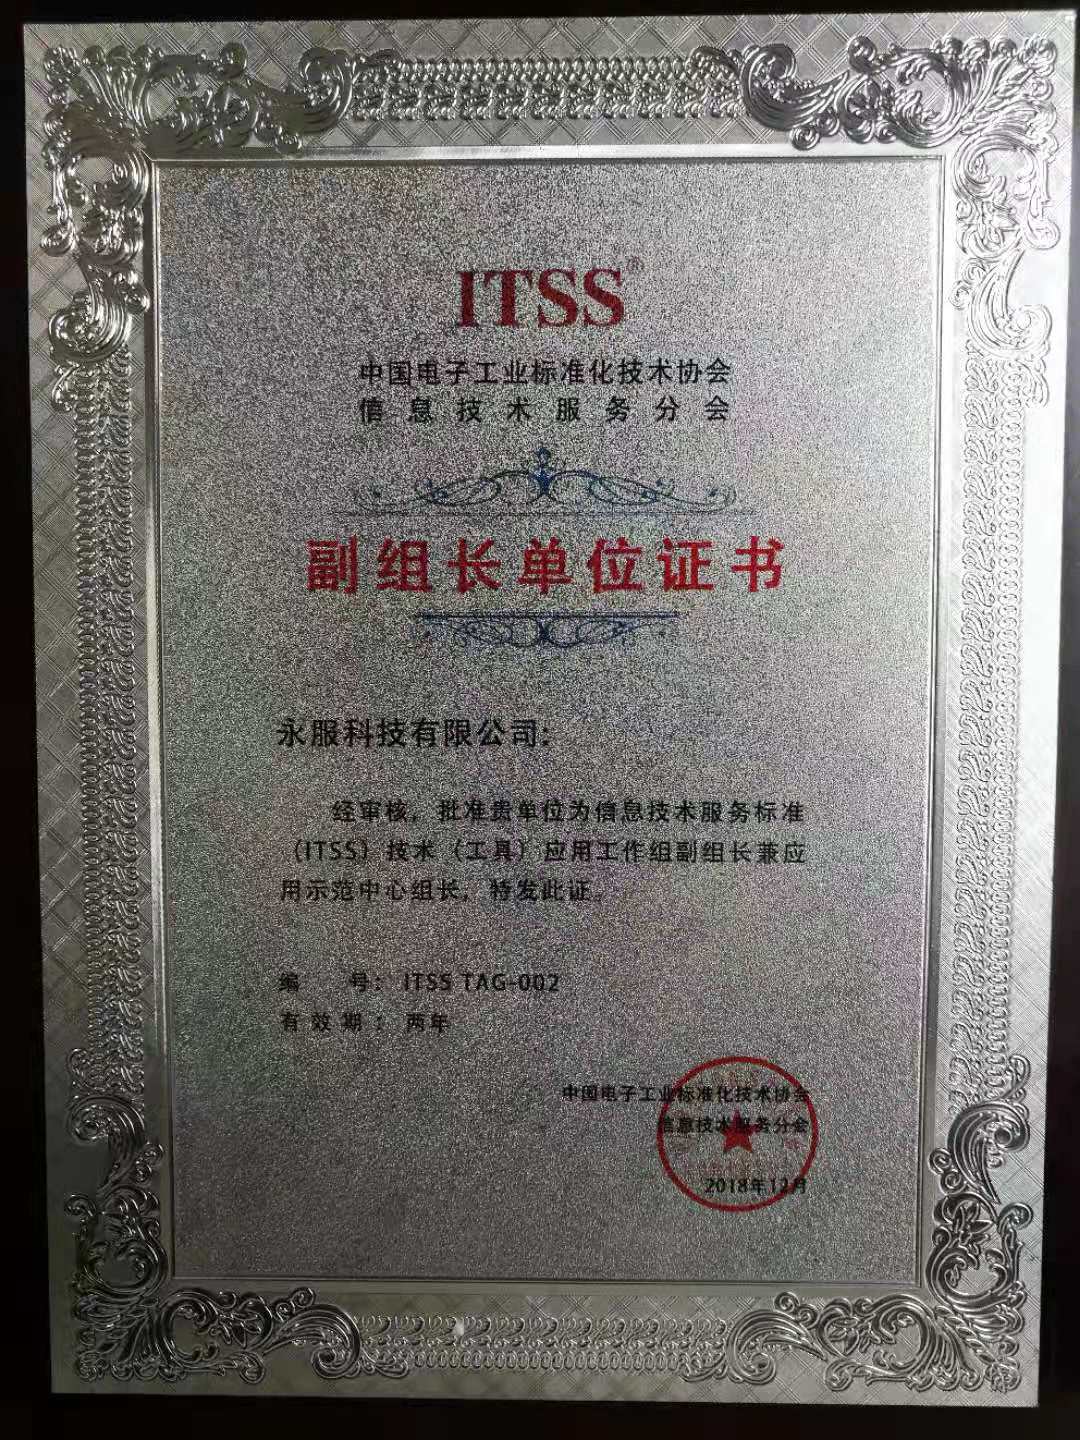 祝贺永服科技正式成为 中国ITSS副组长单位